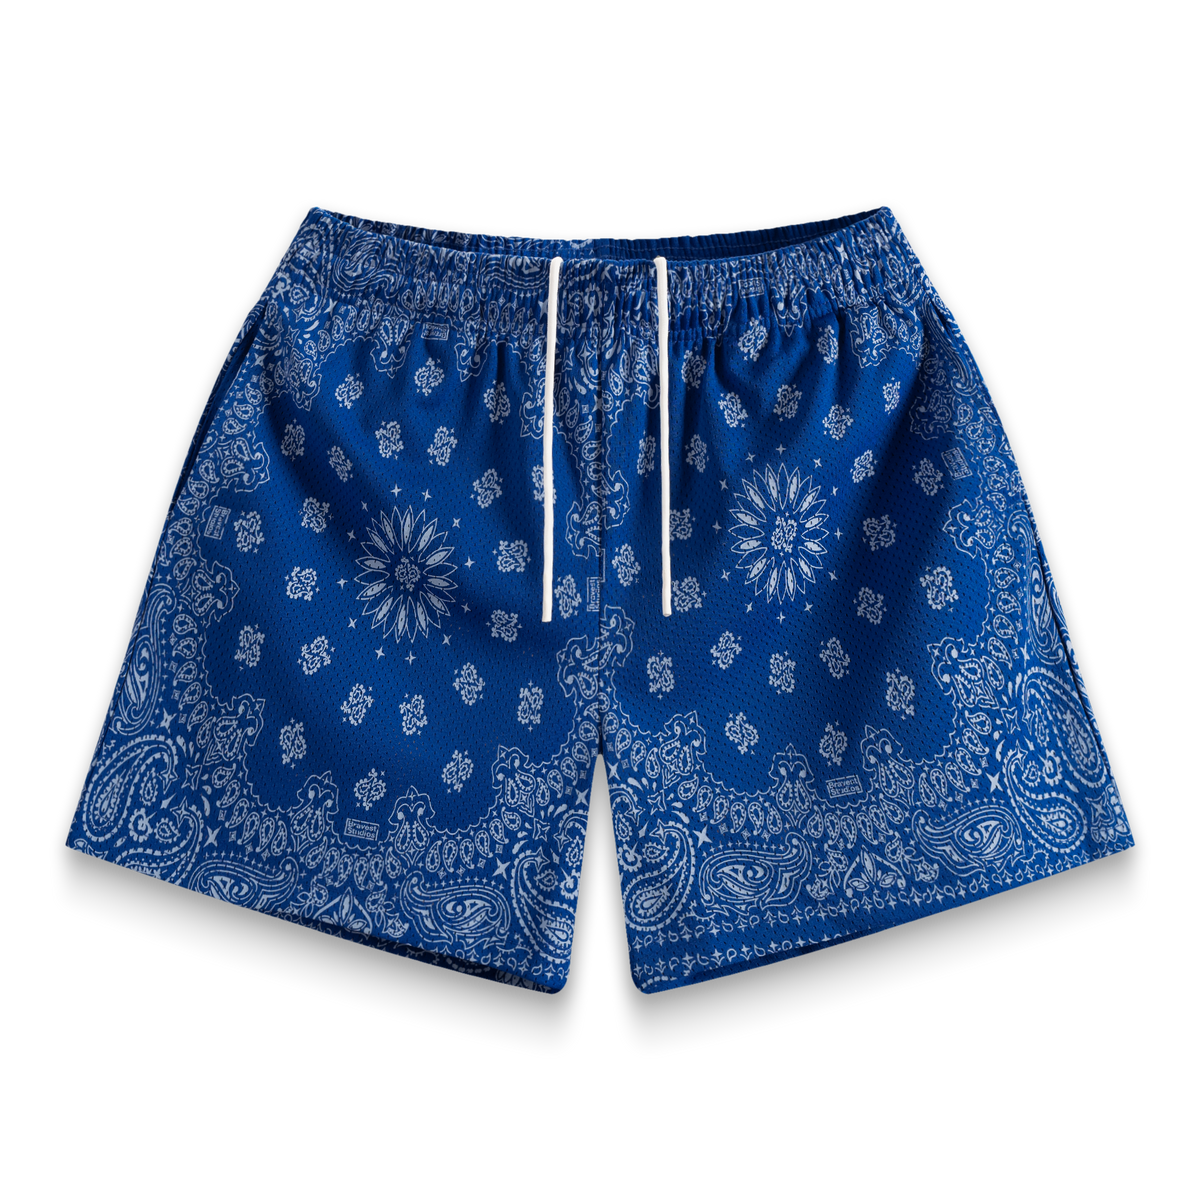 Screen Printed Blue Paisley Shorts